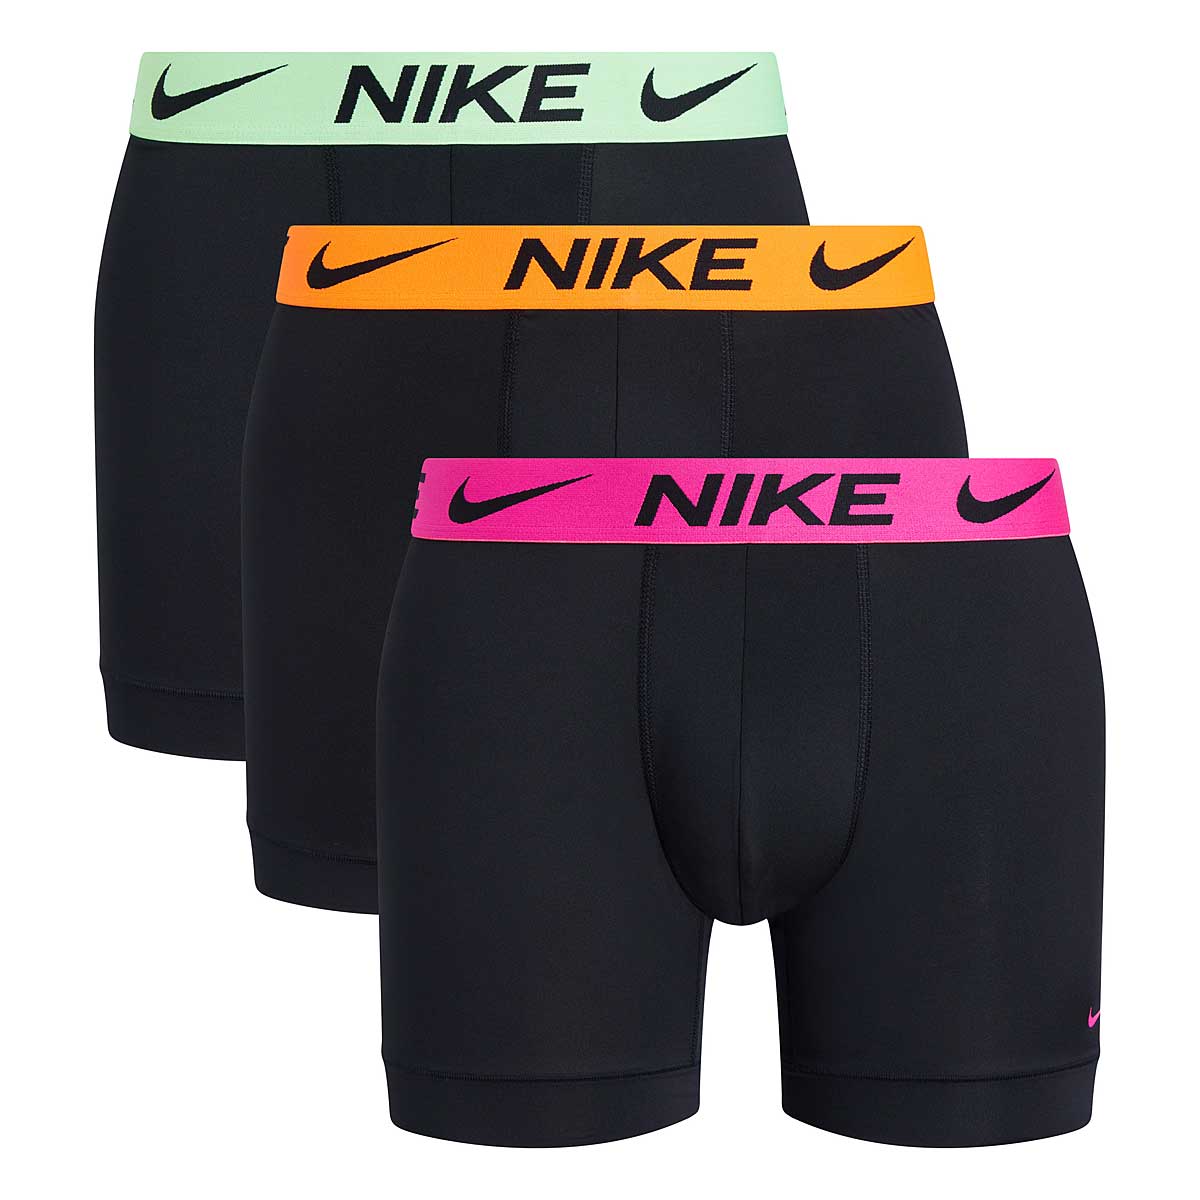 Image of Nike Boxer Brief 3pk, Black/green/orange/pink